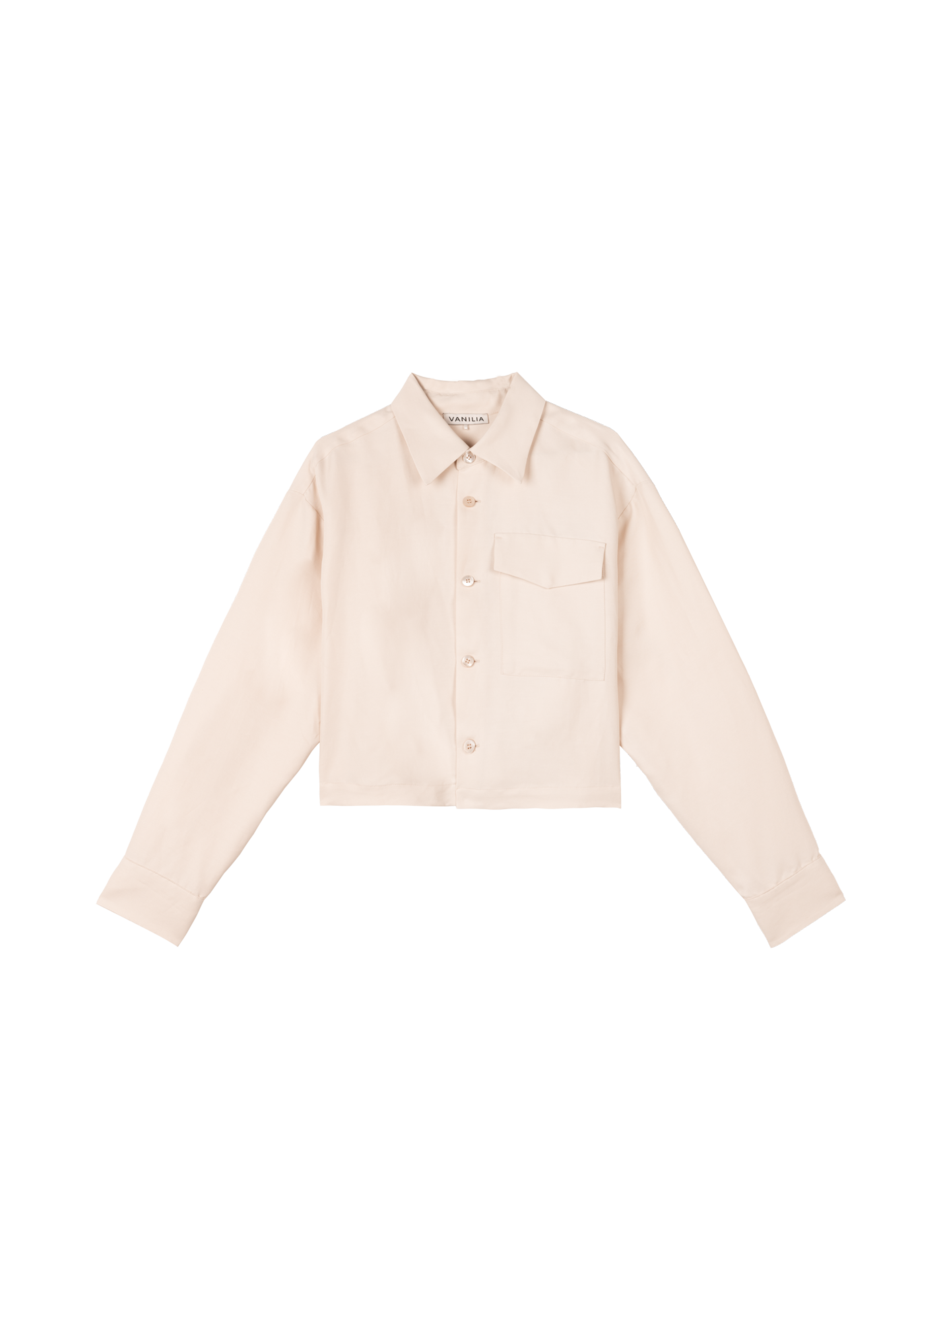 Aanbieding van Pocket linen blouse voor 149,95€ bij Vanilia